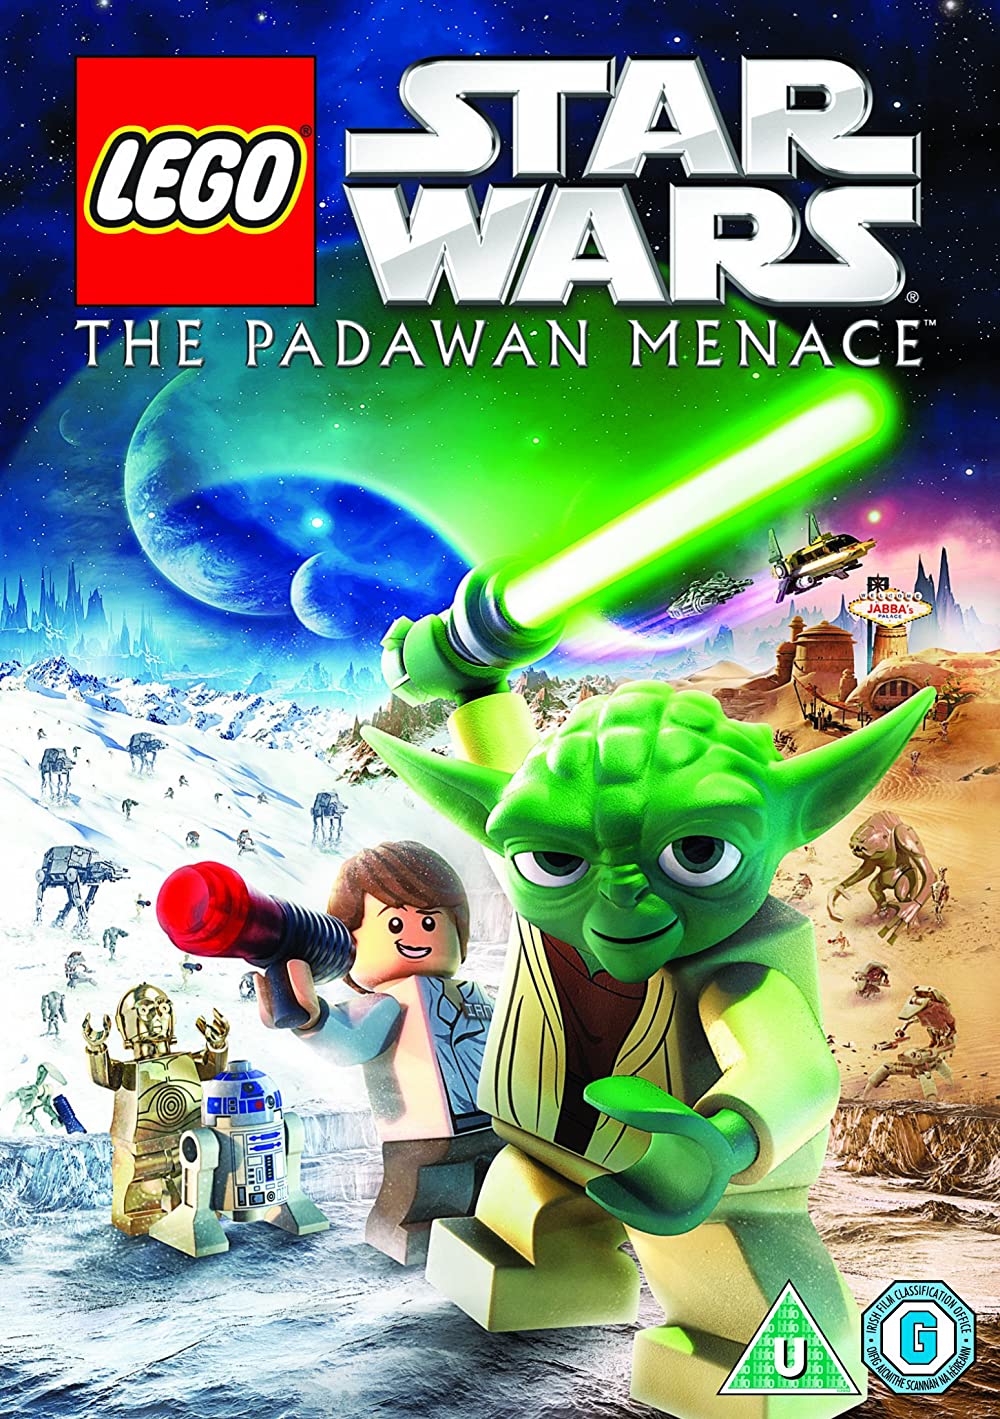 Download Lego Star Wars: The Padawan Menace Movie | Lego Star Wars: The Padawan Menace